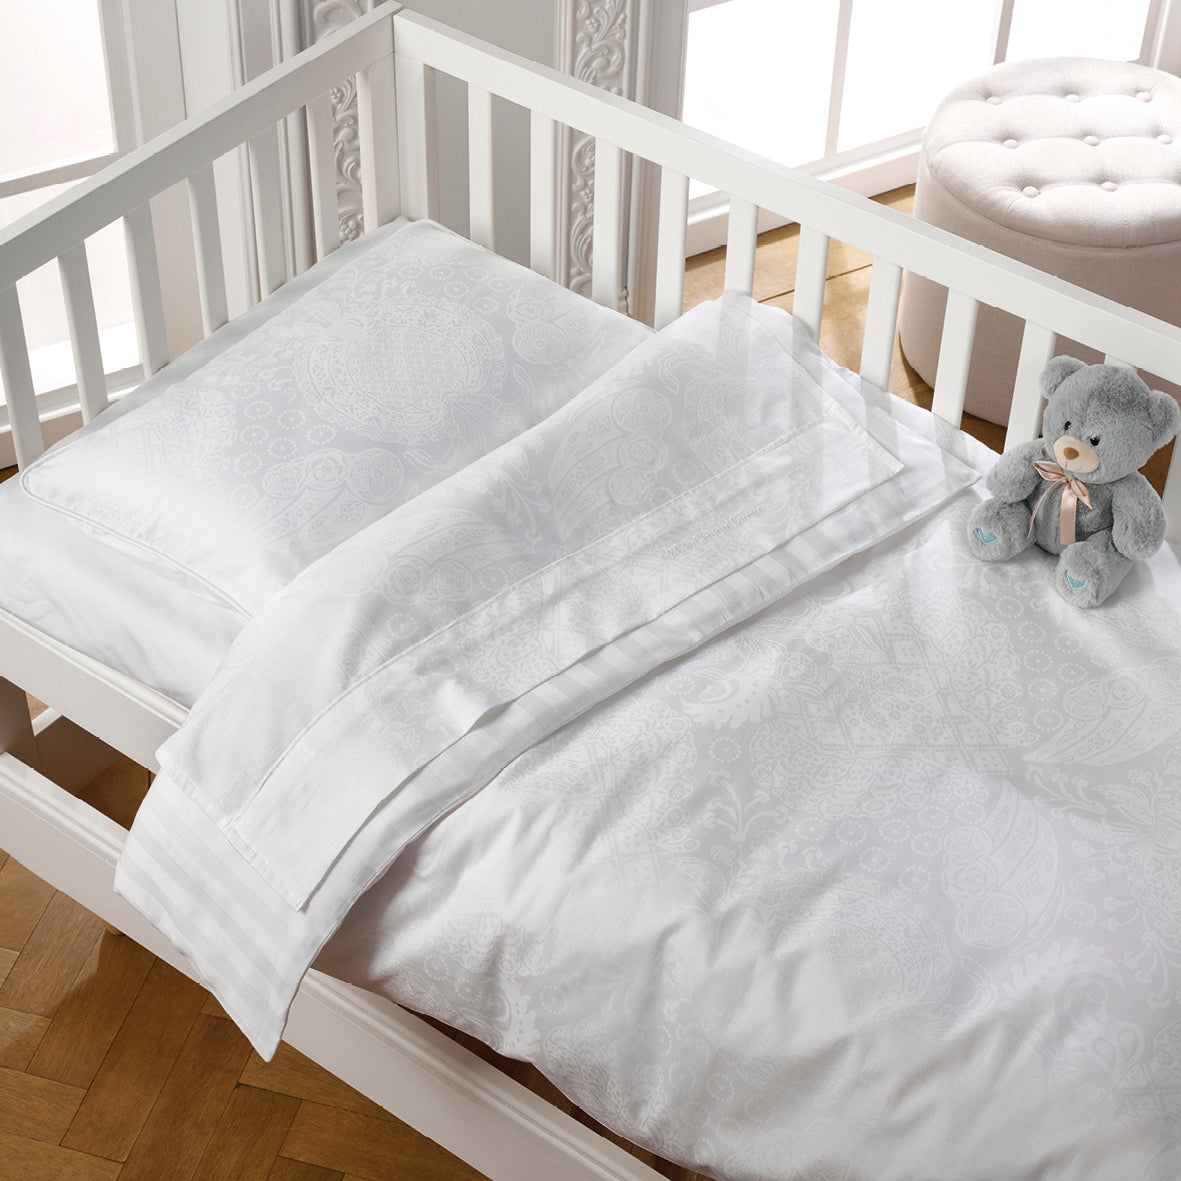 Blanket baby - Arles White - Jacquard woven